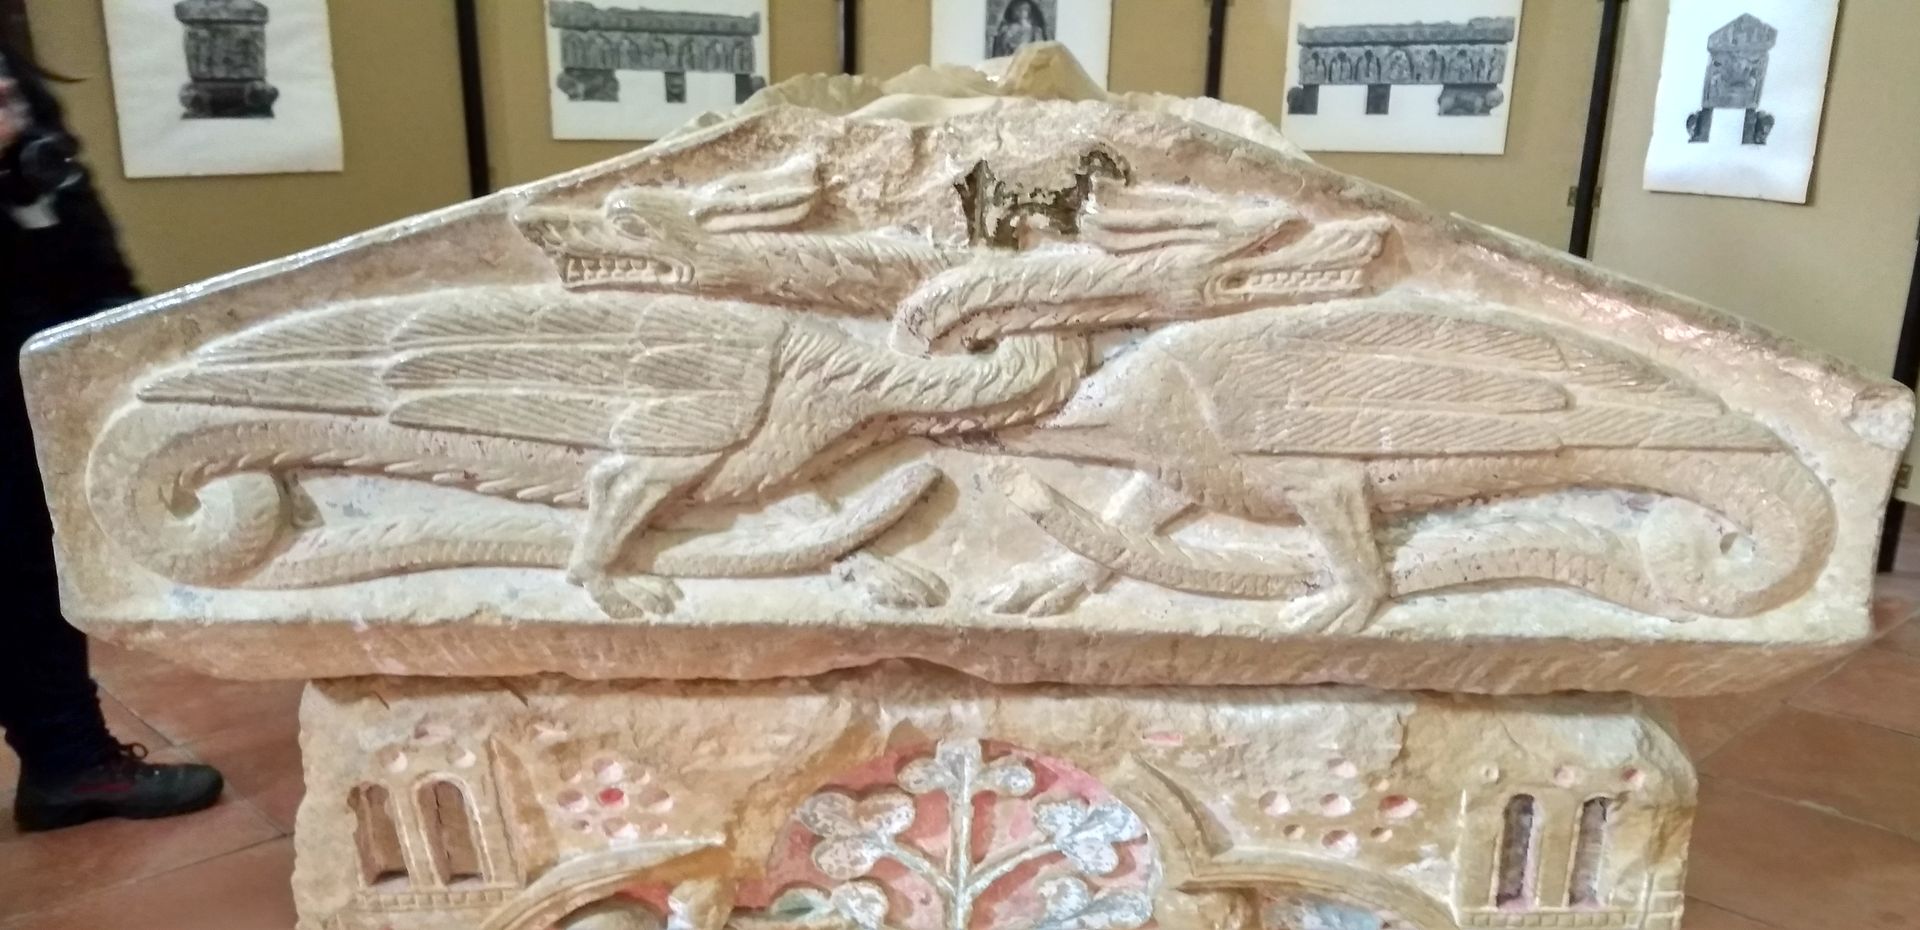 Detalle de dragones en un sarcófago